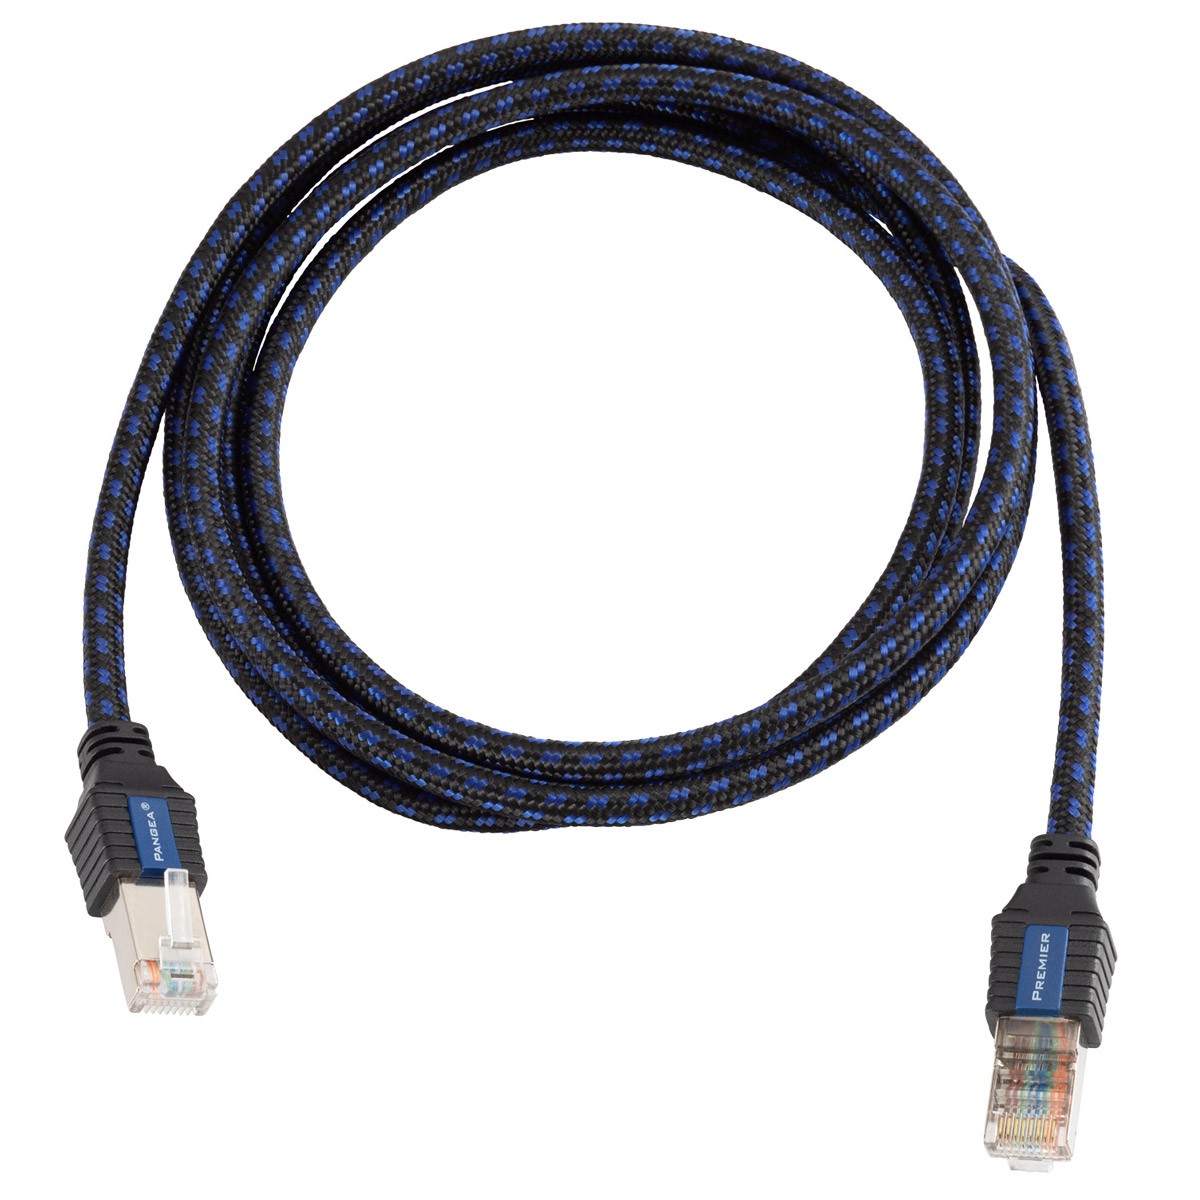 RSSD-RJ45S-4416-20M, Câble Ethernet catégorie 5e Feuille d'aluminium avec  blindage tressé de fils de cuivre étamés Turck, Vert, 20m